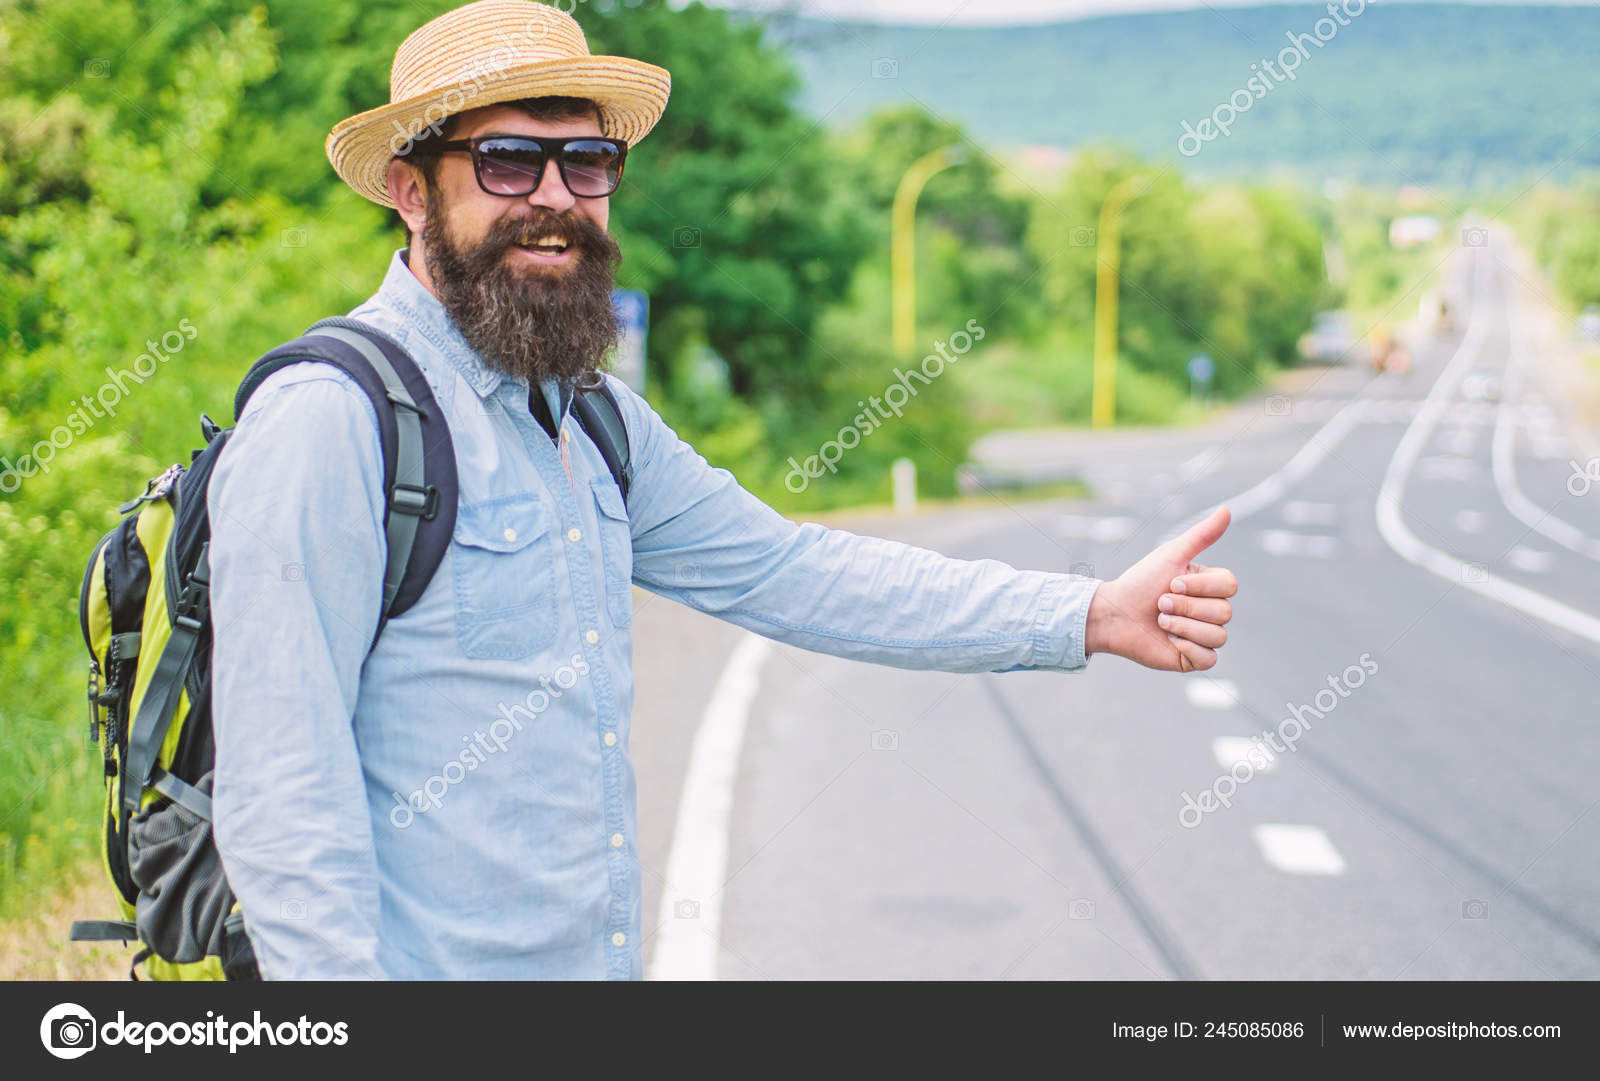 S way travel. Мужчина автостоп. Старик путешествует автостопом. Автостопер парень. Люди которые путешествуют автостопом.